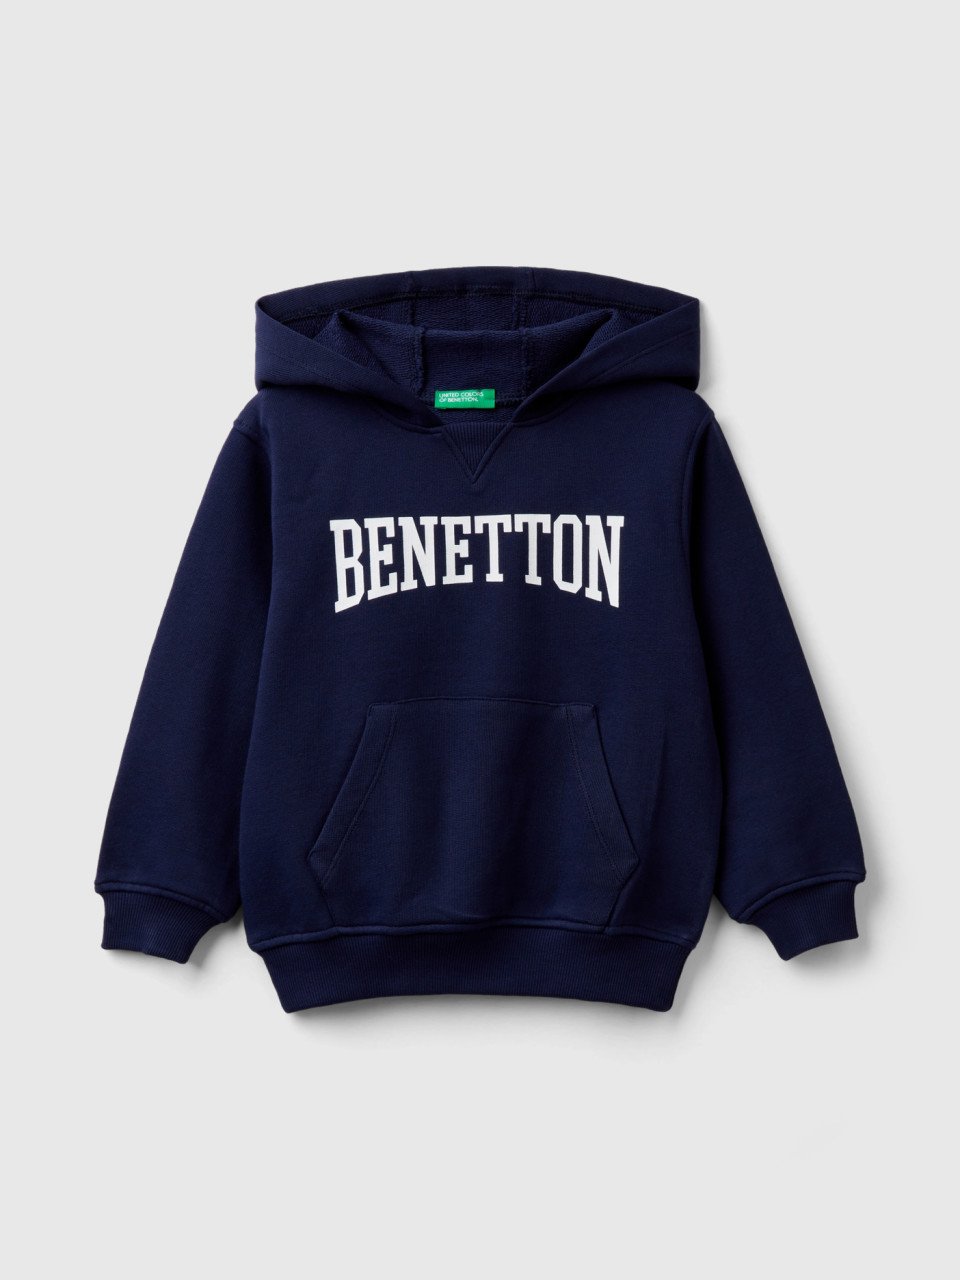 Benetton, 100% Cotton Hoodie, Dark Blue, Kids